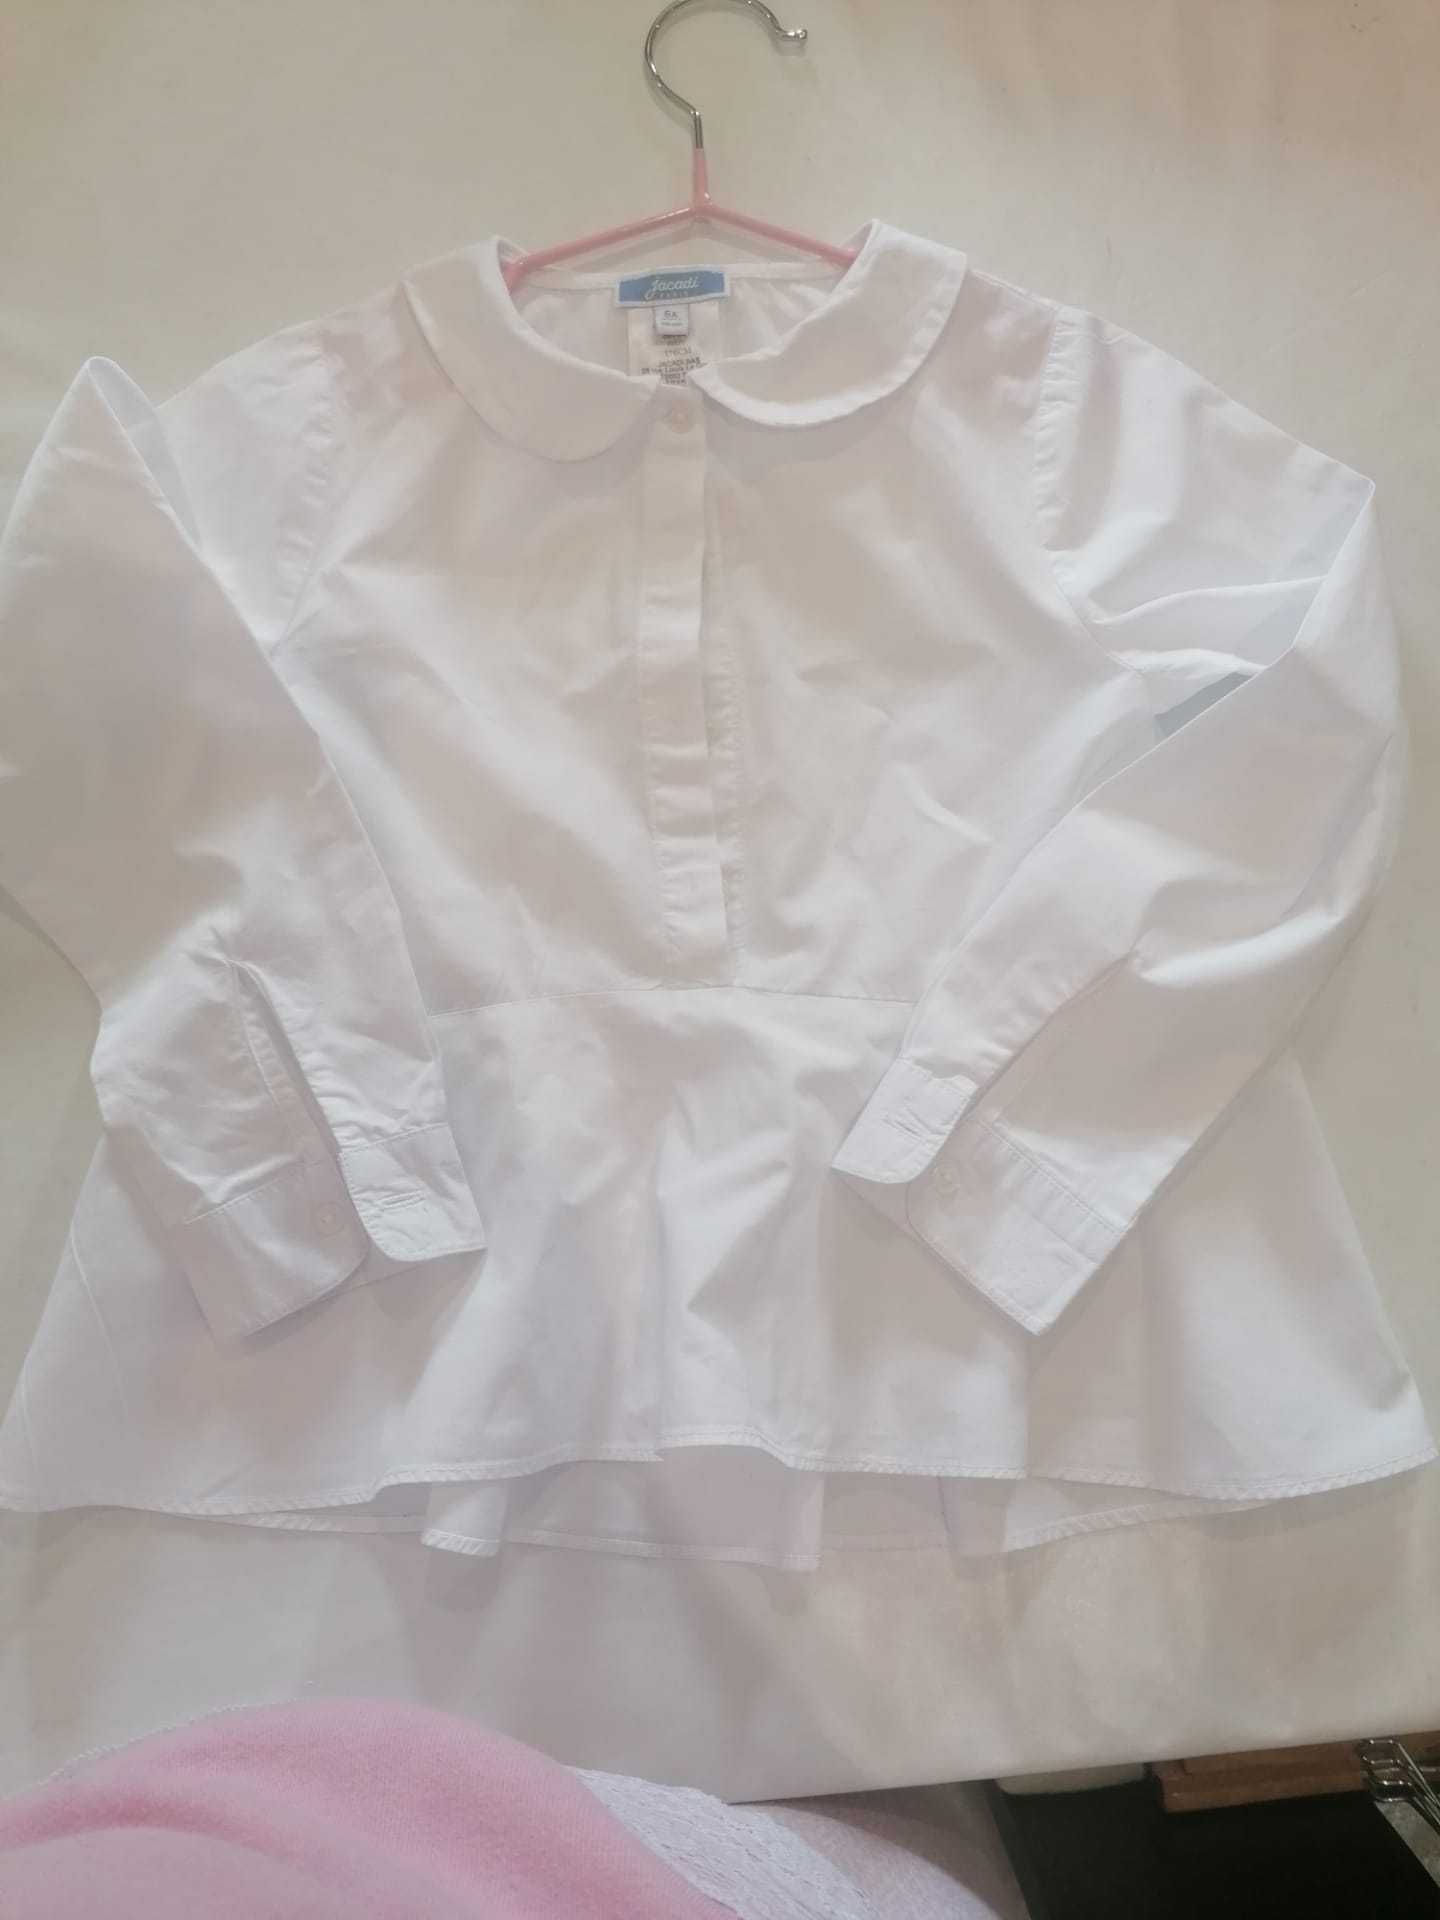 Vendo blusa branca Jacadi tamanho 6 anos em excelente estado